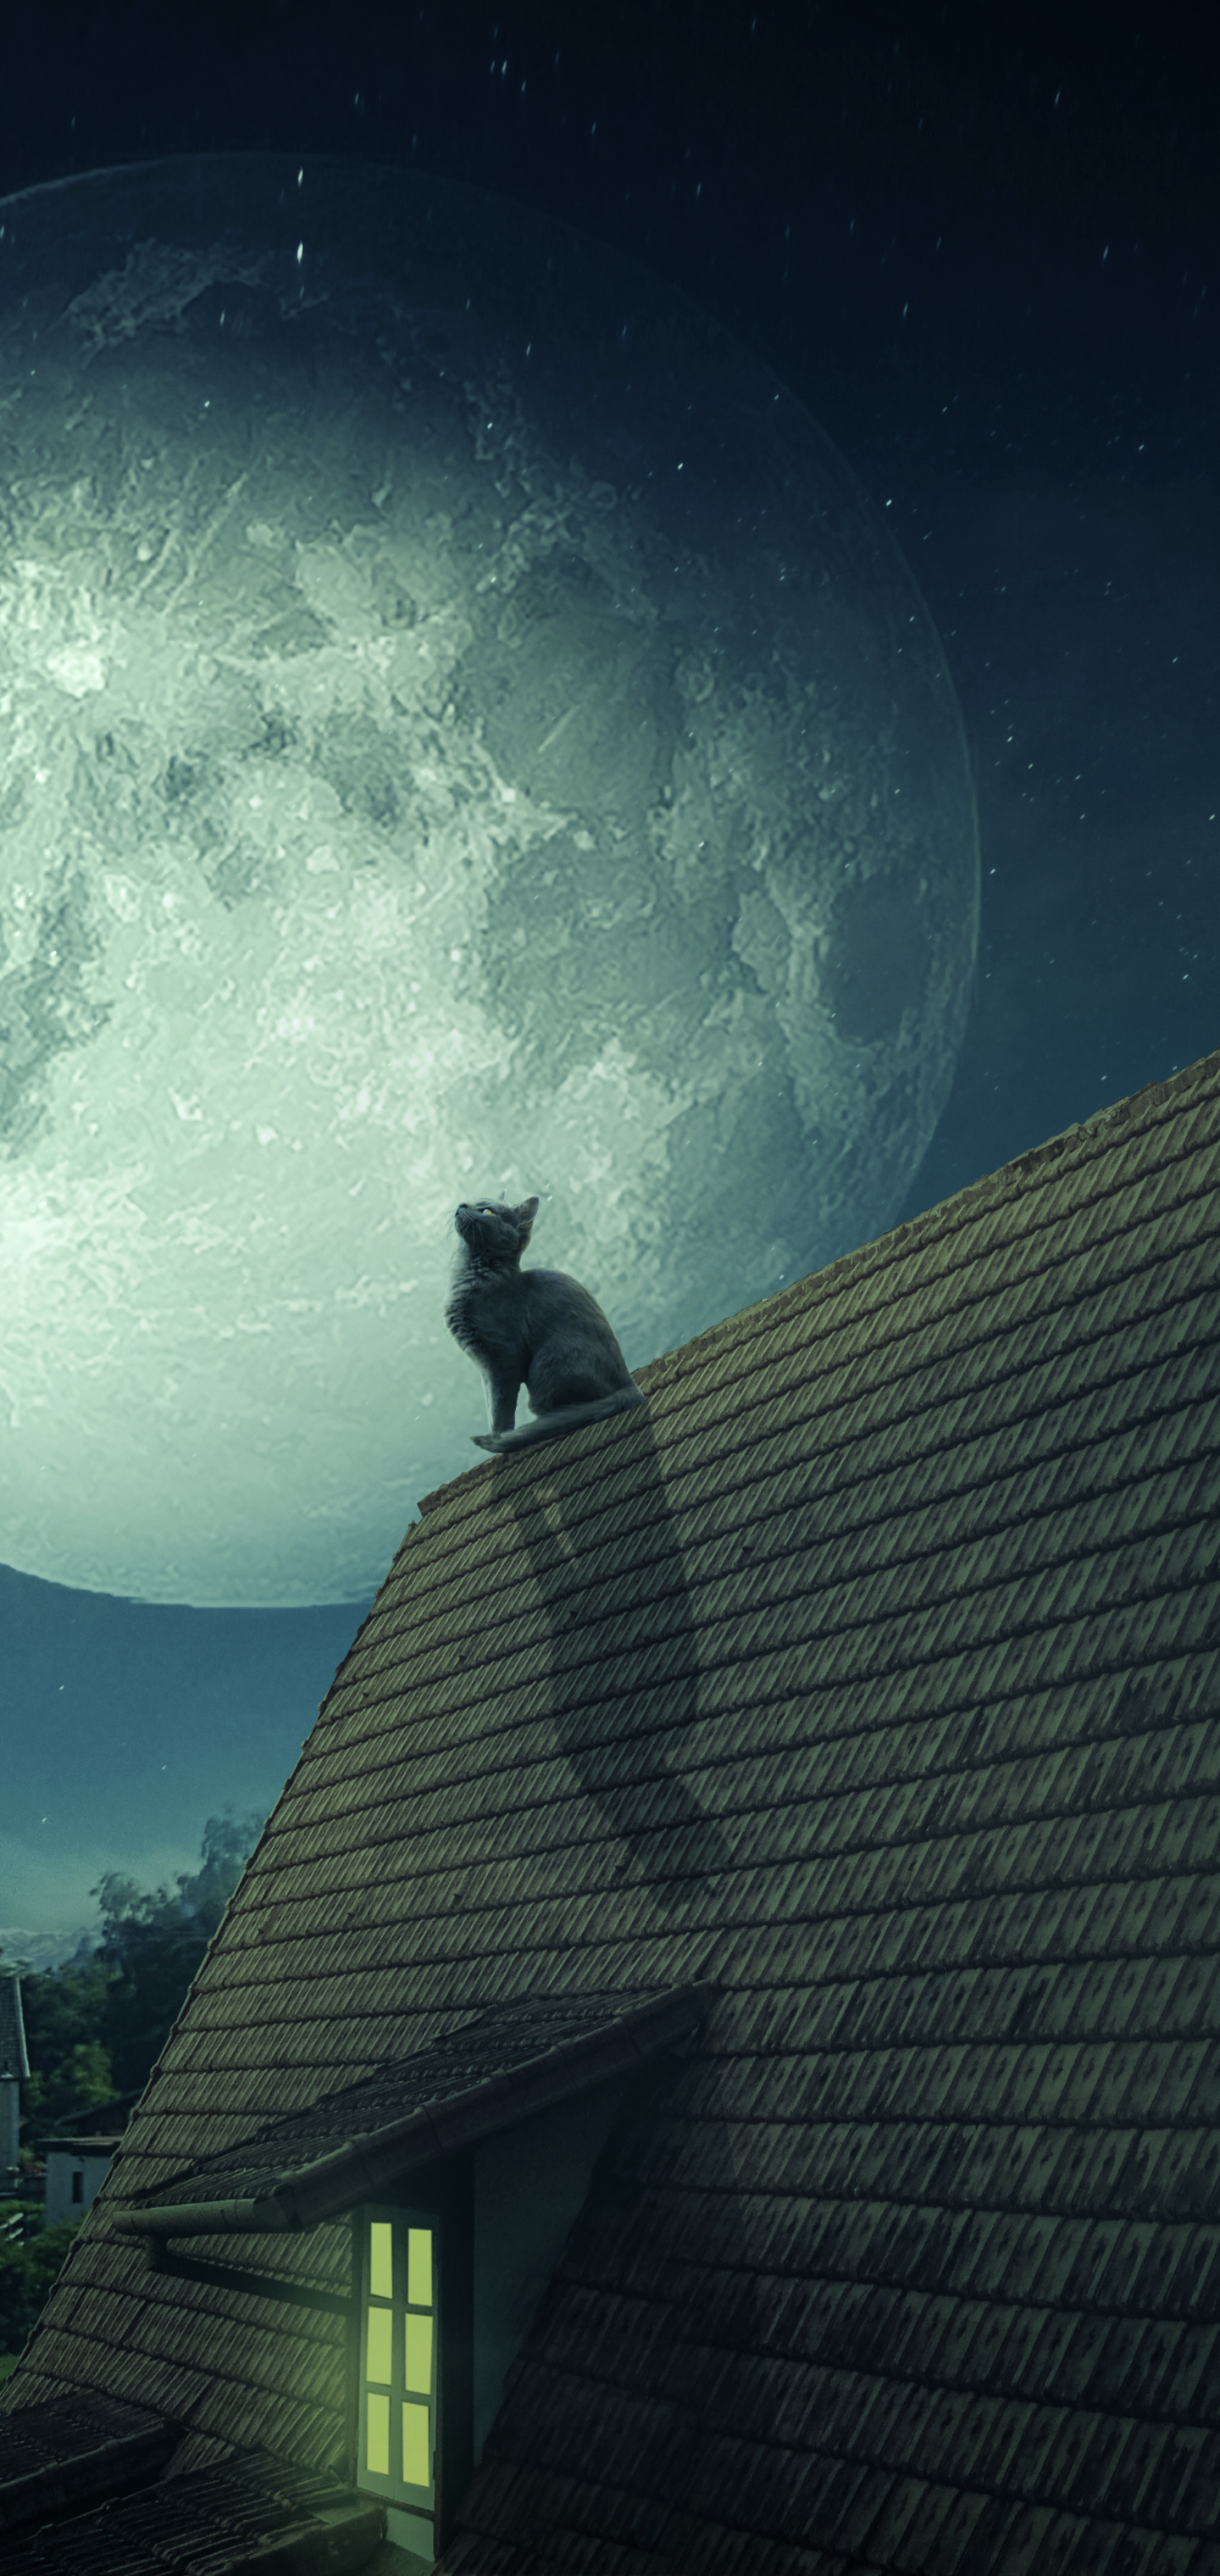 Скачать обои бесплатно Животные, Ночь, Луна, Крыша, Кошка, Кошки картинка на рабочий стол ПК